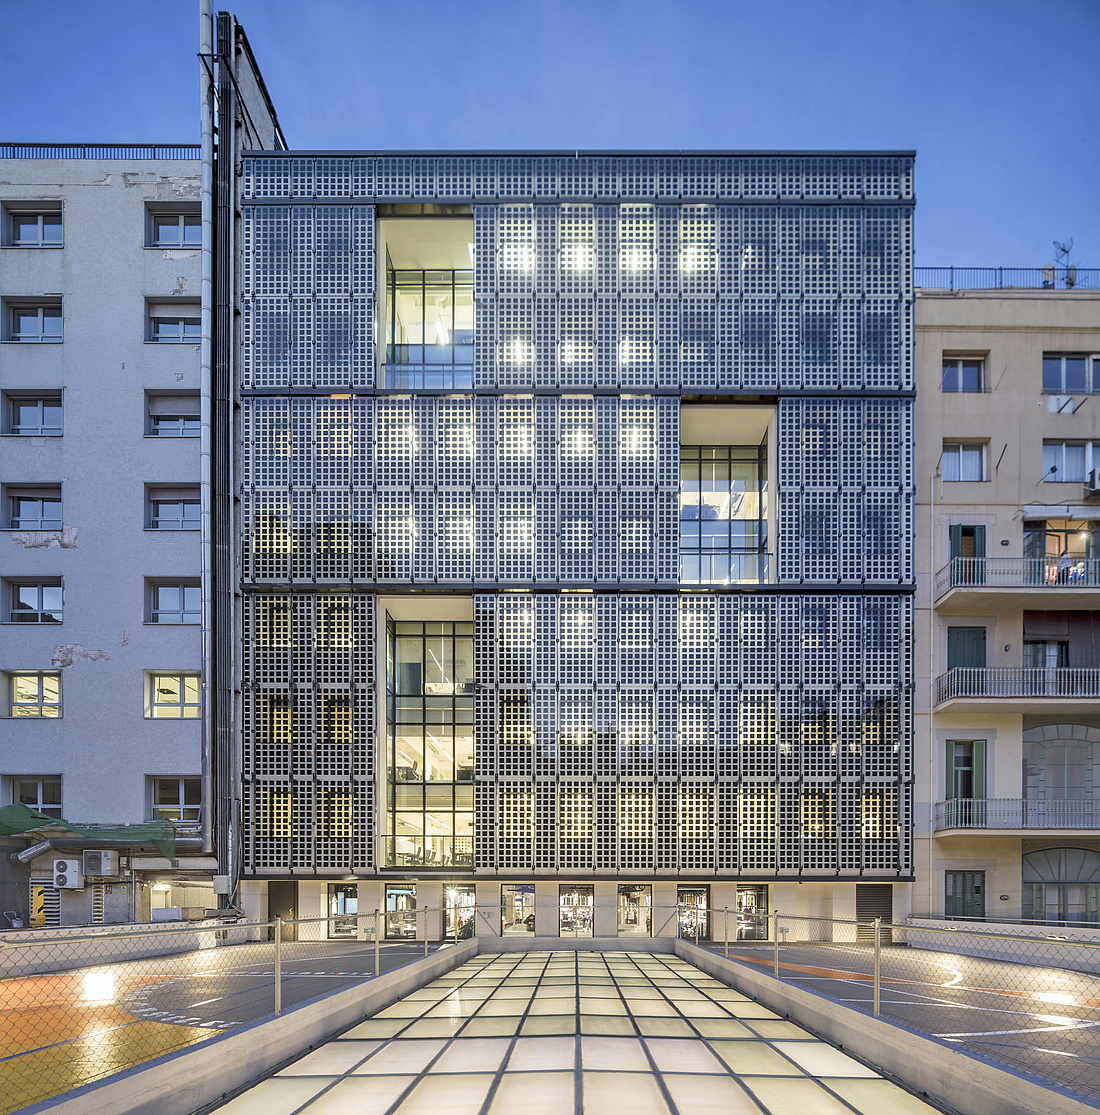 Foto einer BIPV-Fassade einer Büroimmobilie mit transparenten Modulen mit sichtbaren PV-Zellen